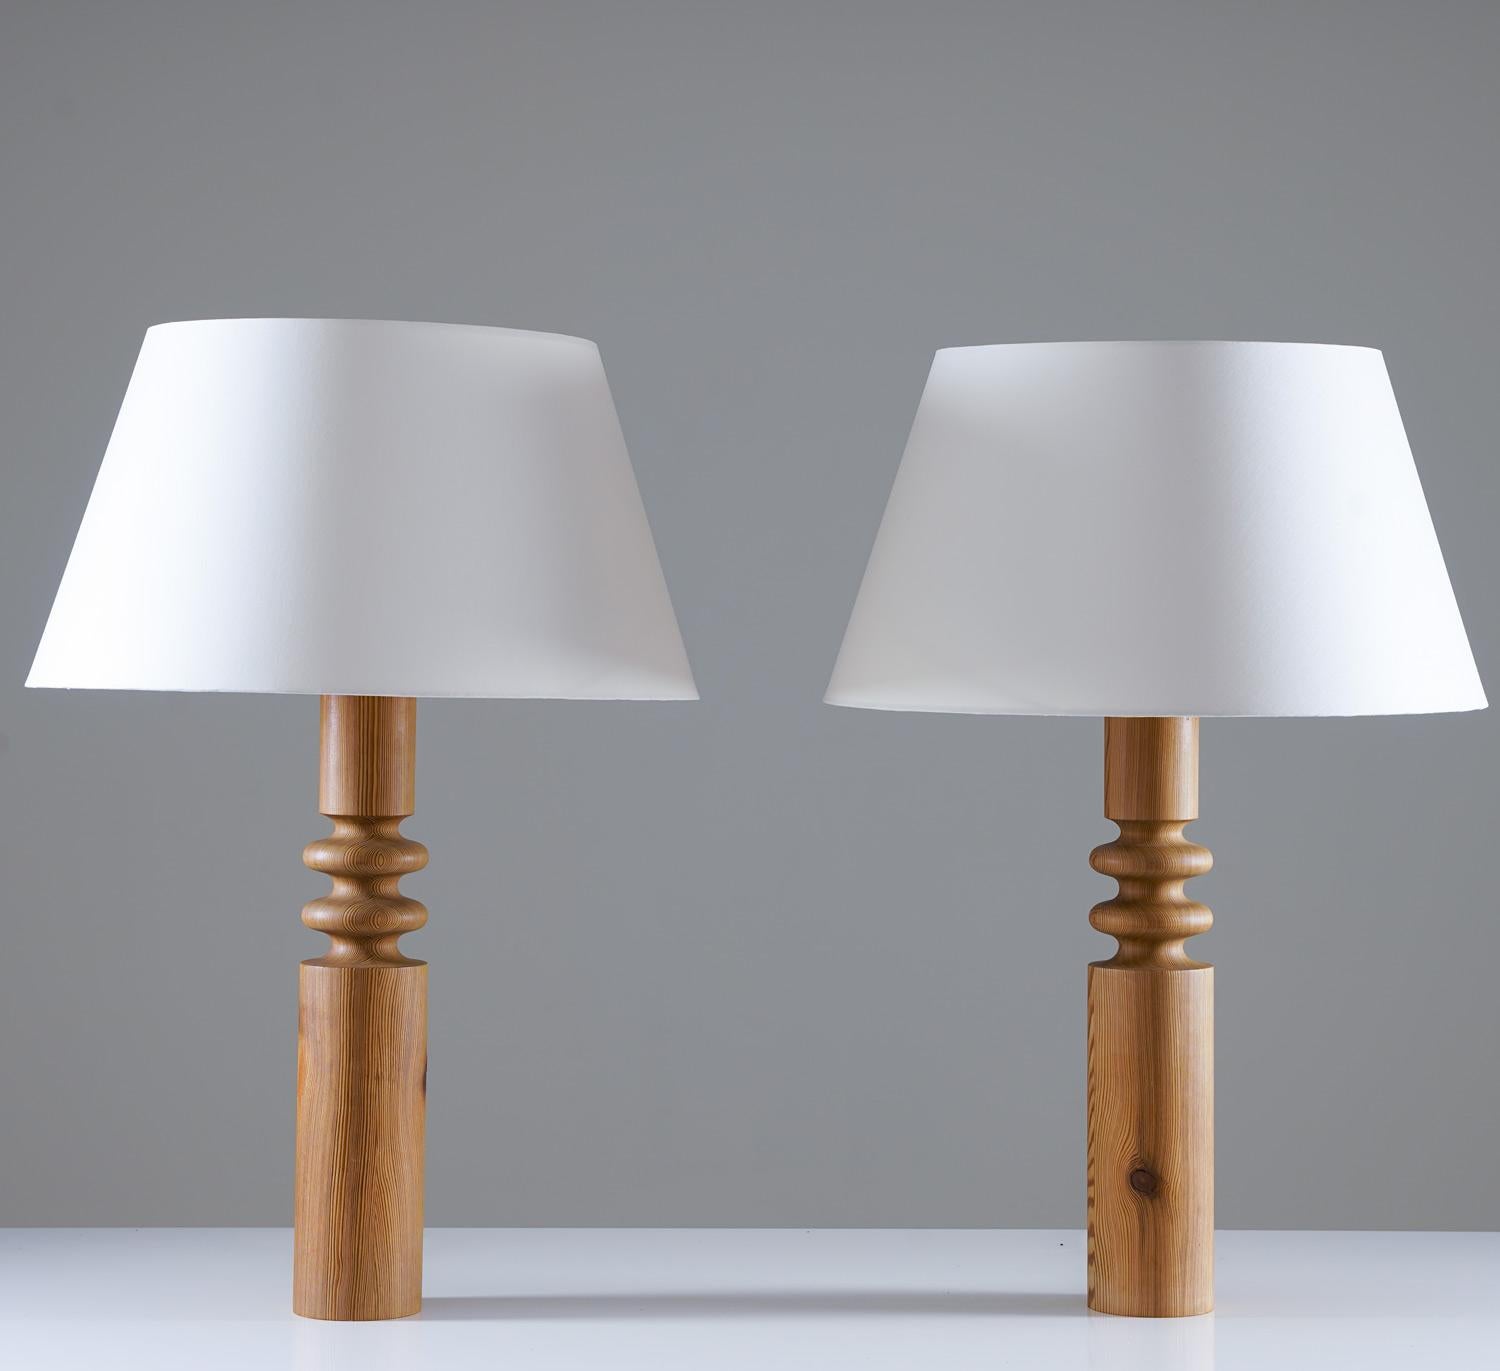 Ensemble de deux grandes lampes de table par Östen Kristiansson pour Luxus, Suède, 1970.
Les lampes sont constituées d'une base en pin tourné, qui a magnifiquement vieilli. 
Les lampes sont équipées de nouveaux abat-jour de haute qualité en tissu